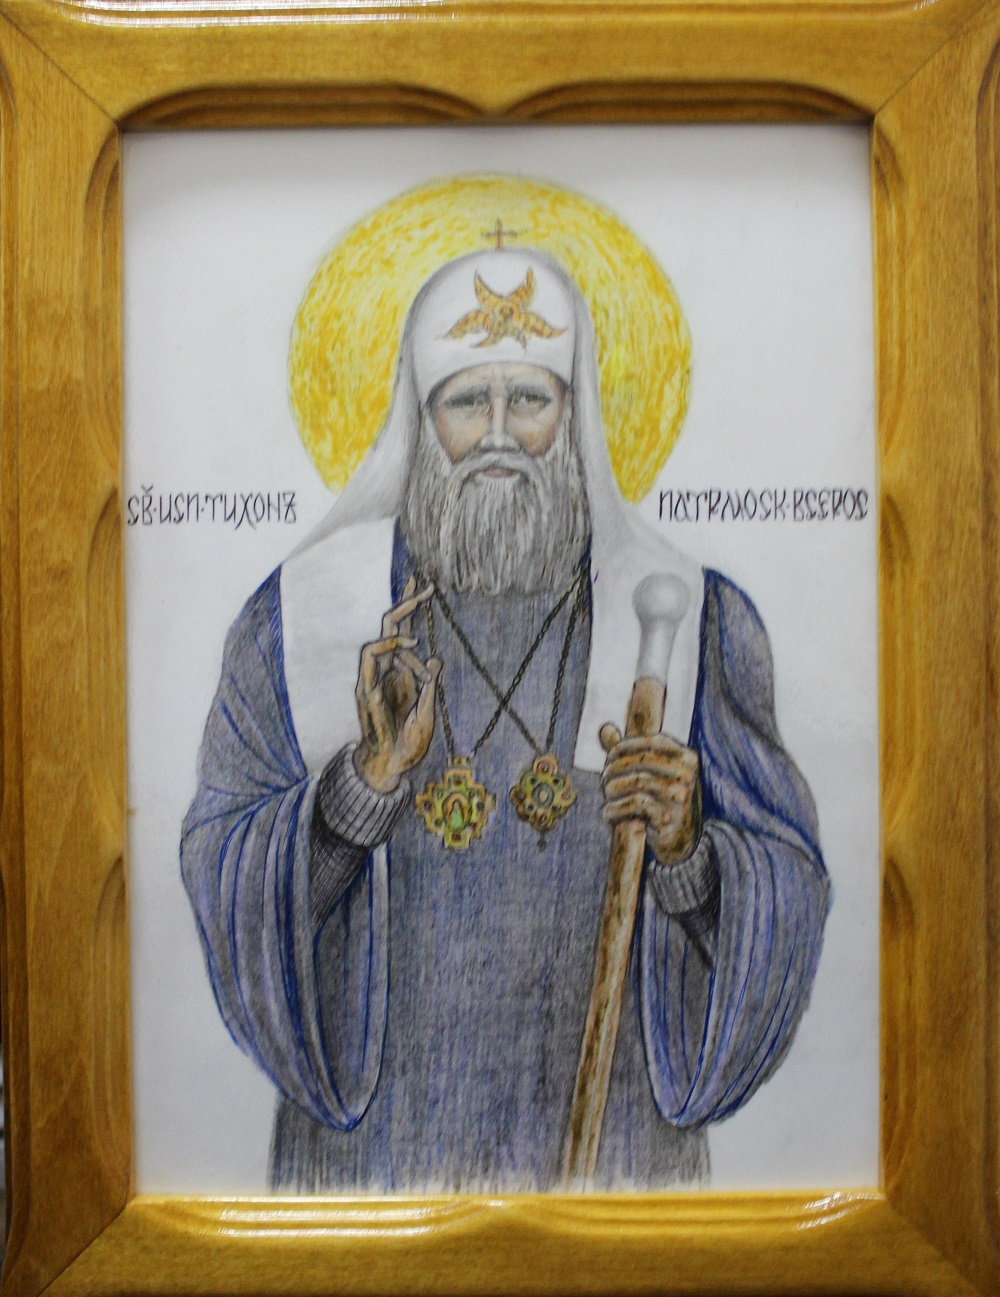 Осужденный из колонии строгого режима Адыгеи написал портрет Патриарха Московского и всея Руси Тихона